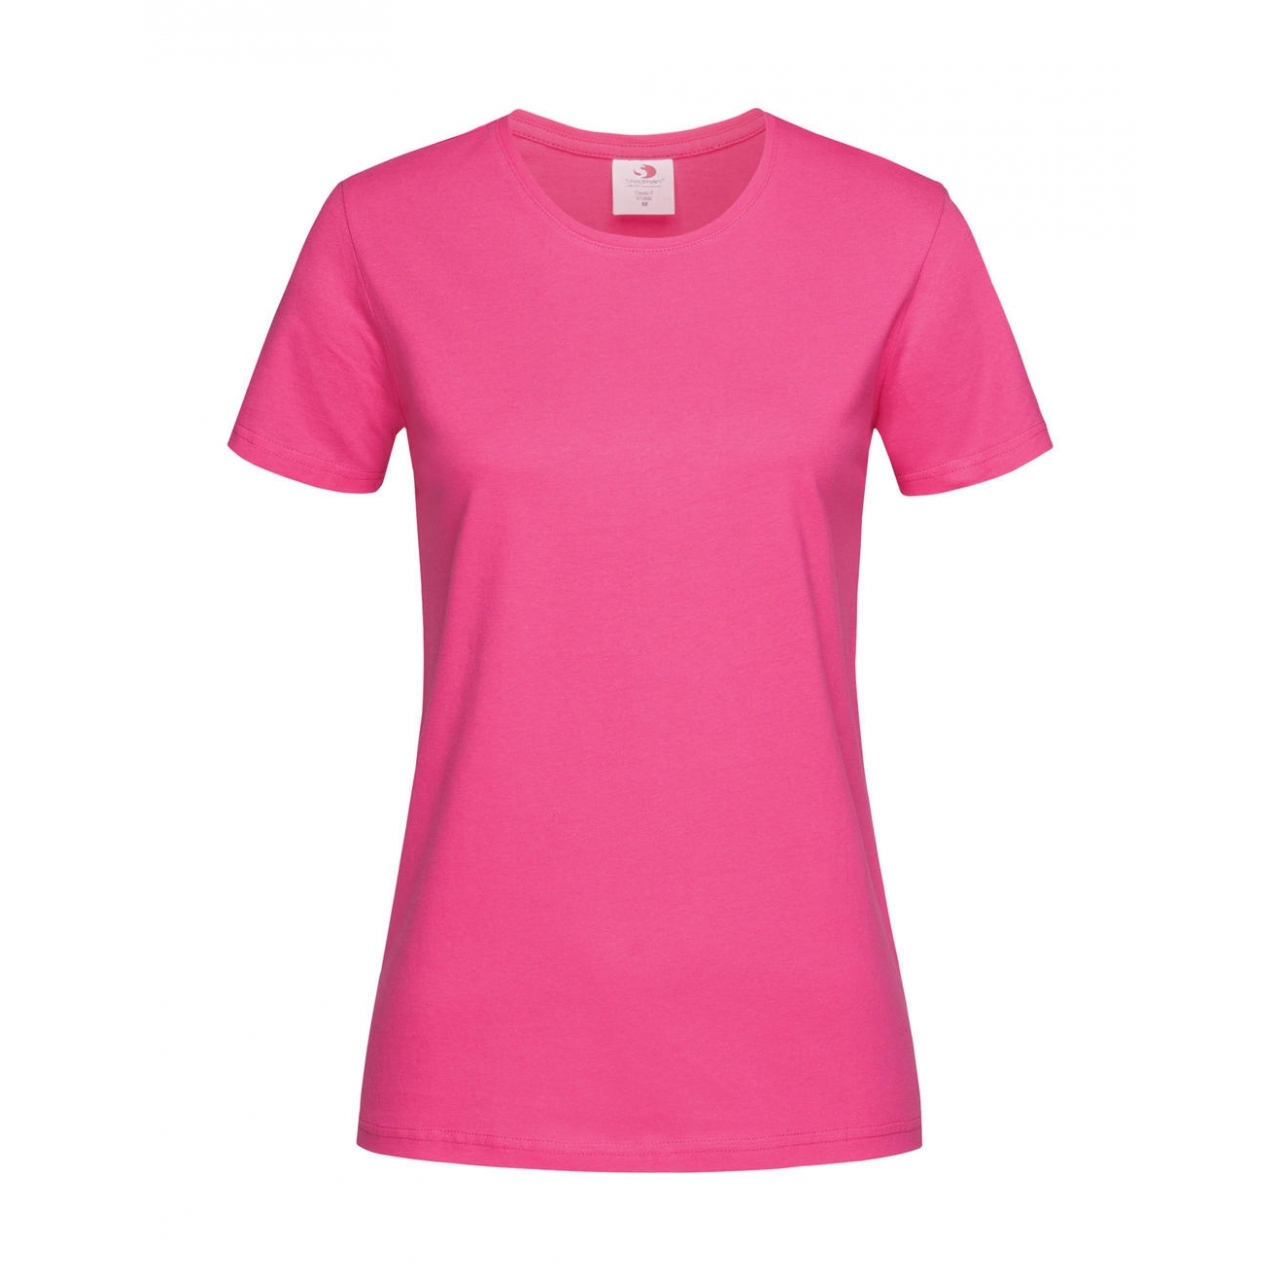 Tričko dámské Stedman Fitted s kulatým výstřihem - růžové, XS